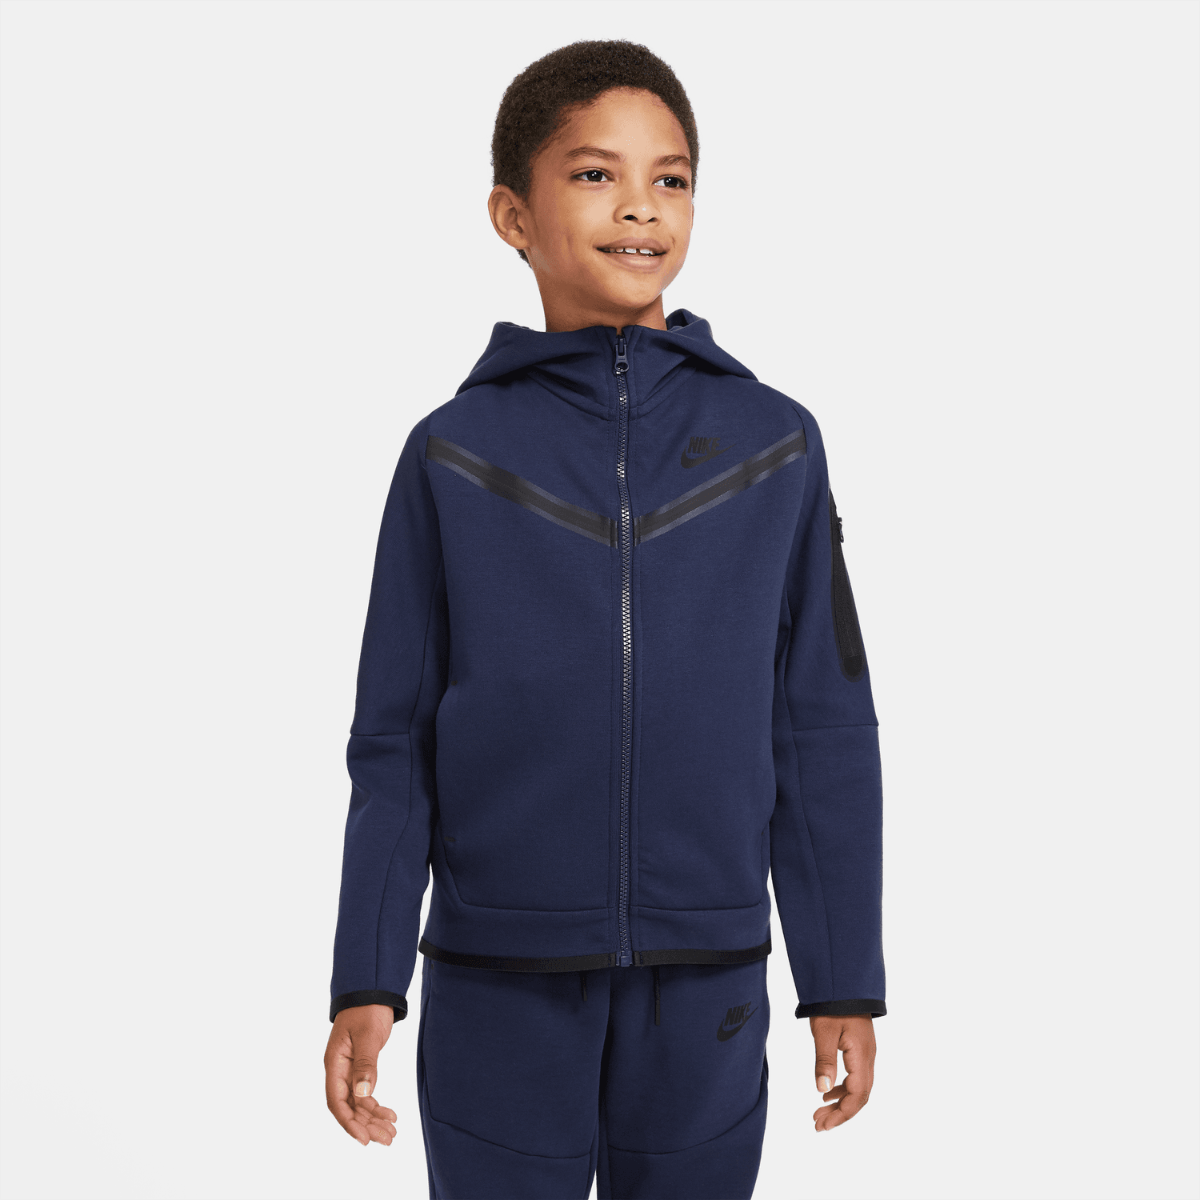 Nike Tech Fleece Junior Jacket - Blue/Black